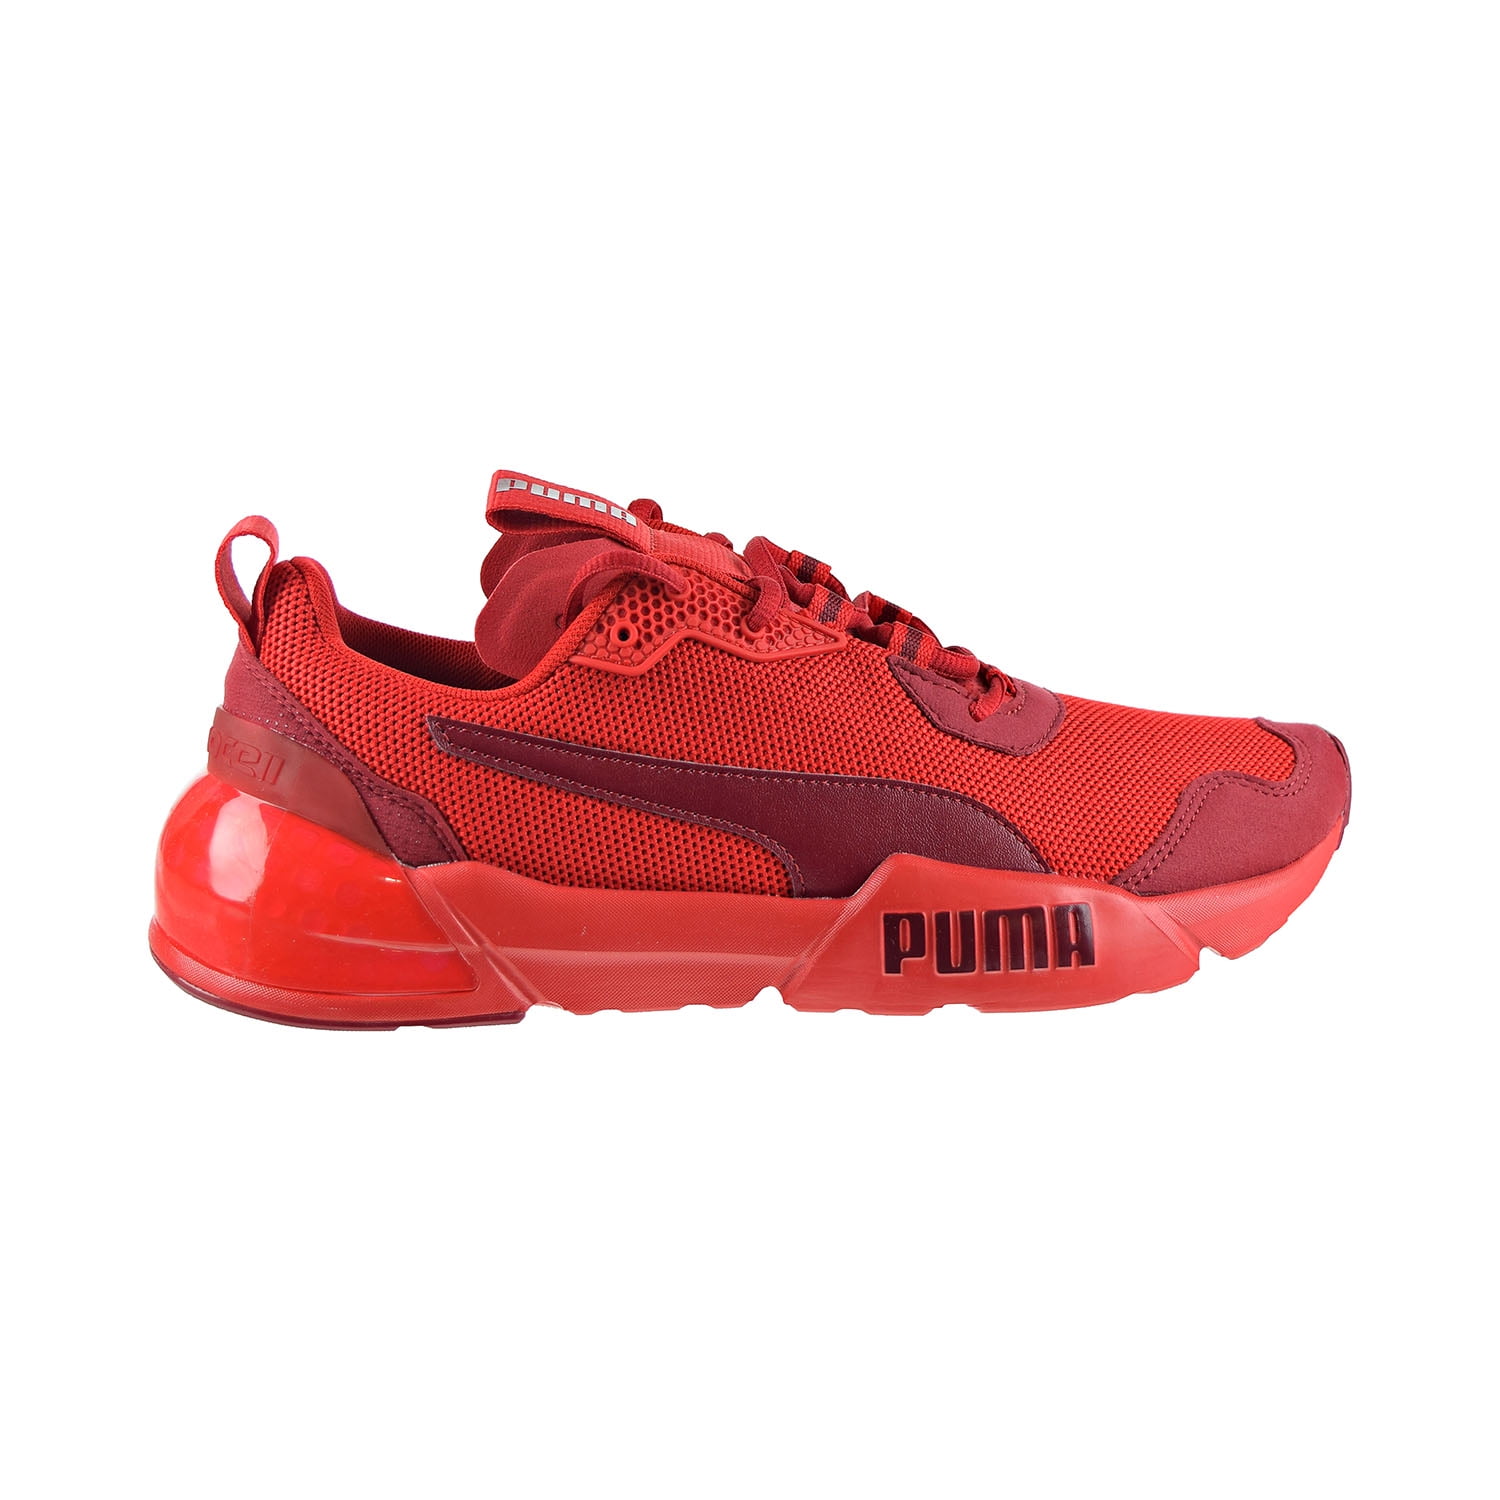 puma cell mens shoes